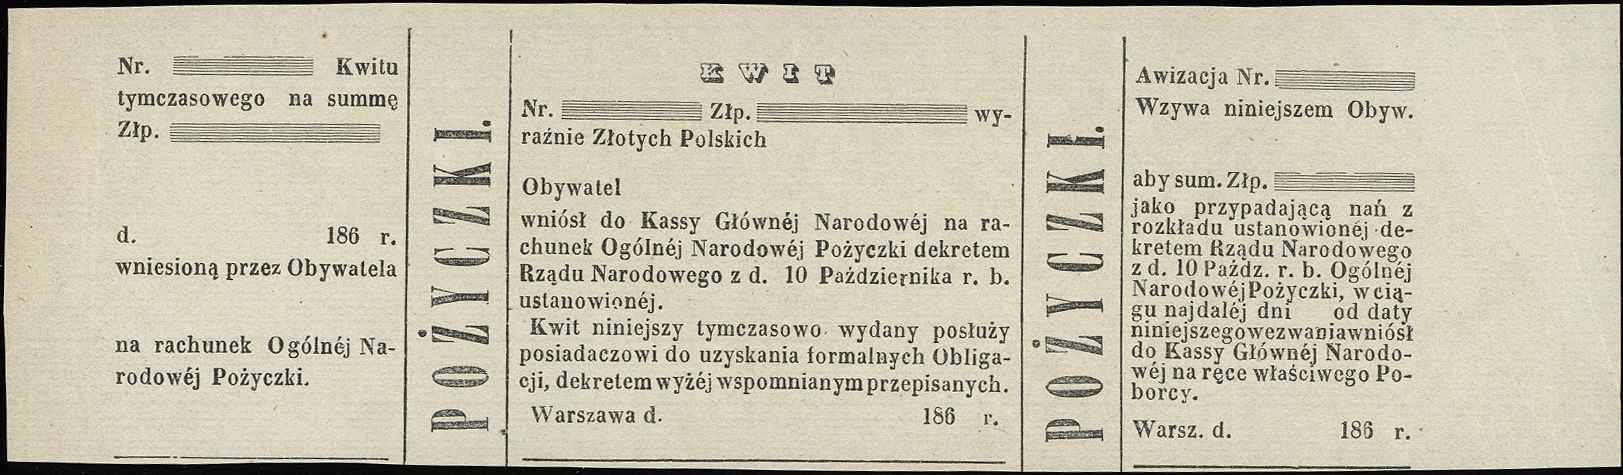 kwit tymczasowy Pożyczki Ogólnej Narodowej Polskiej z 1863 roku, Moczydłowski S21, Lucow 221 (R5) - ale nie notuje bez pieczęci, niewypełniony blankiet, bez pieczęci, pięknie zachowany